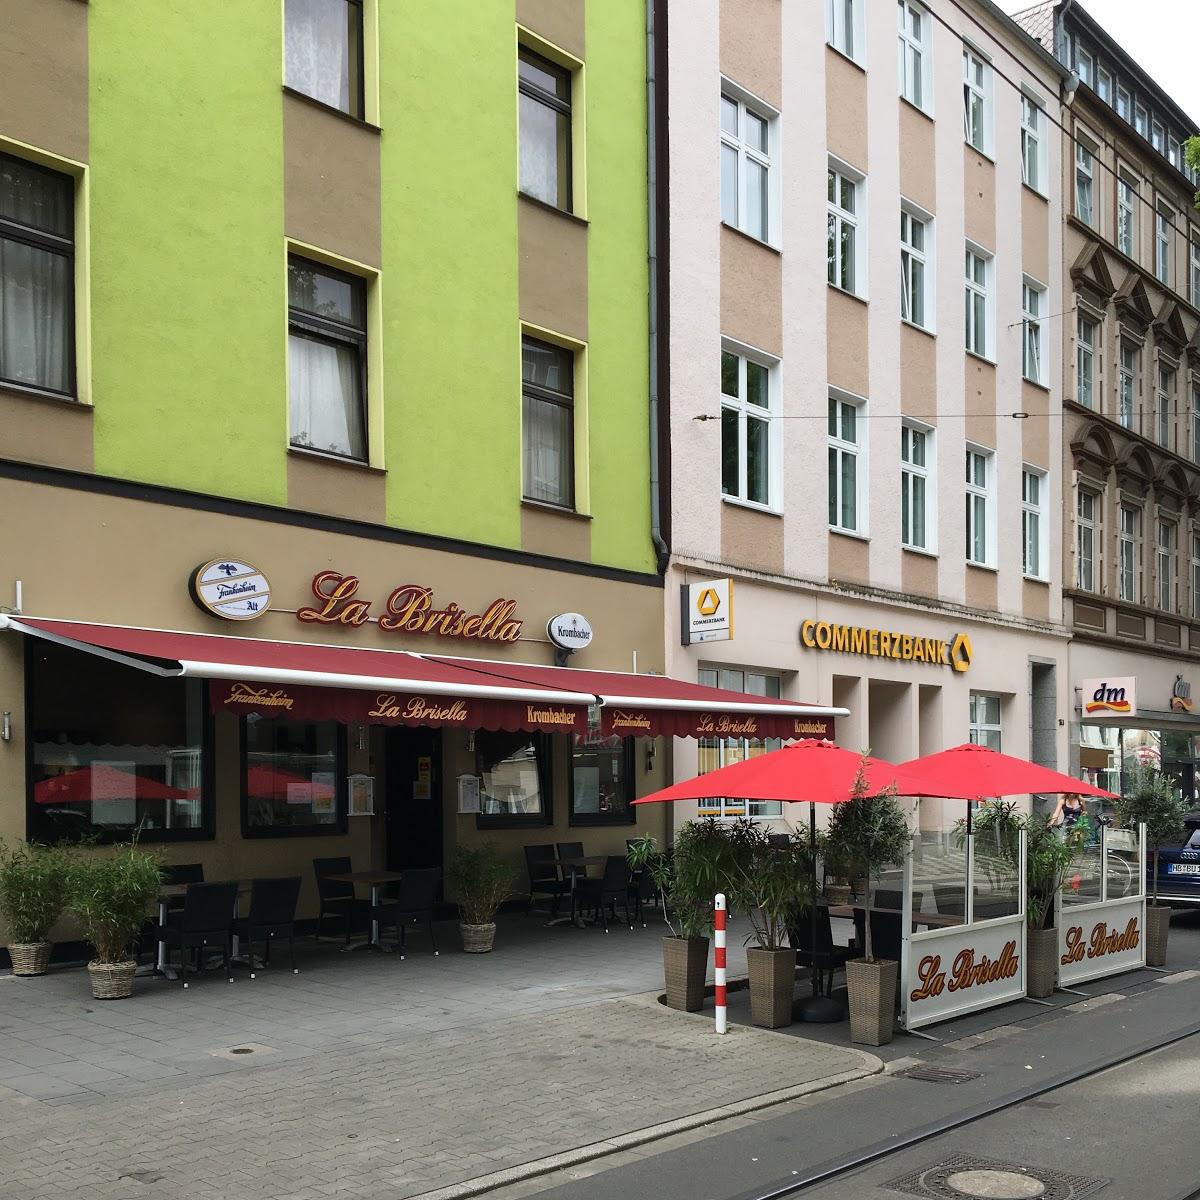 Restaurant "La Brisella -" in Düsseldorf